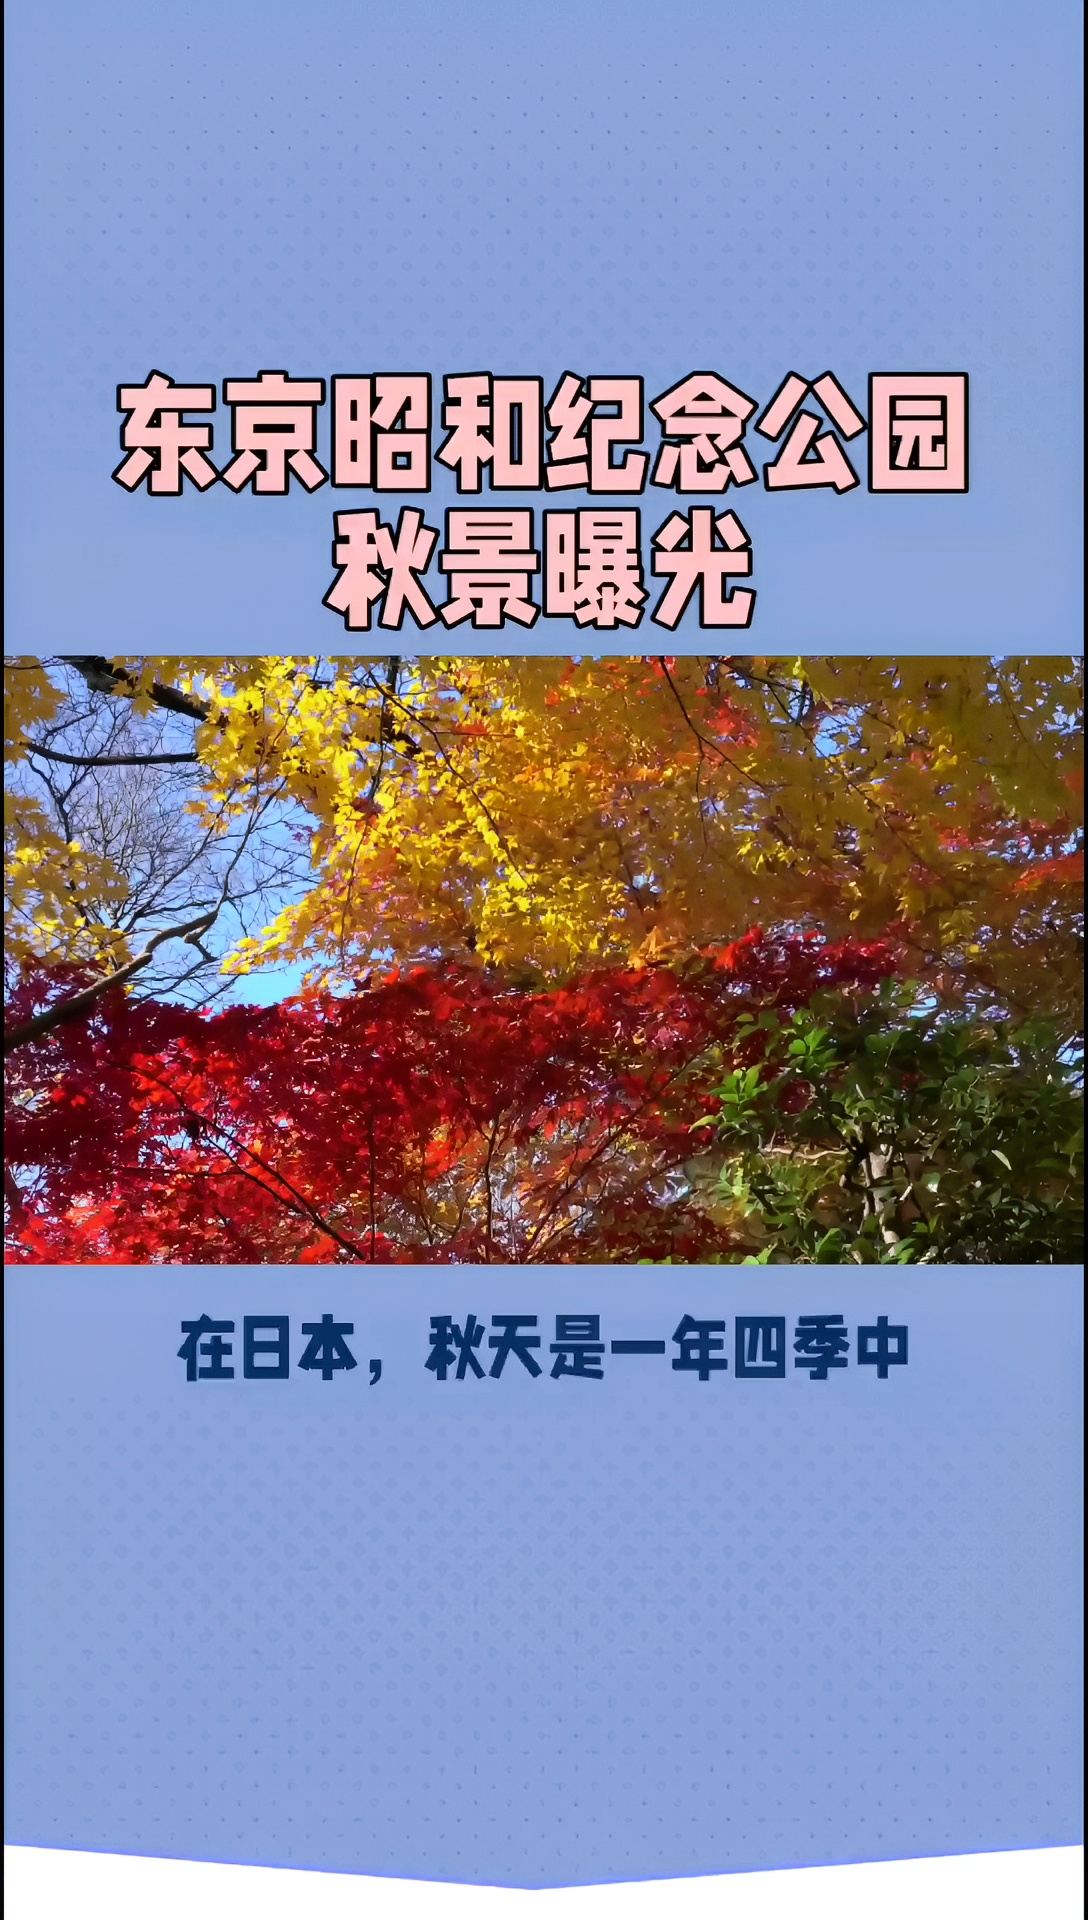 【秋色交织，梦幻昭和】东京昭和纪念公园看红叶与银杏交相辉映！